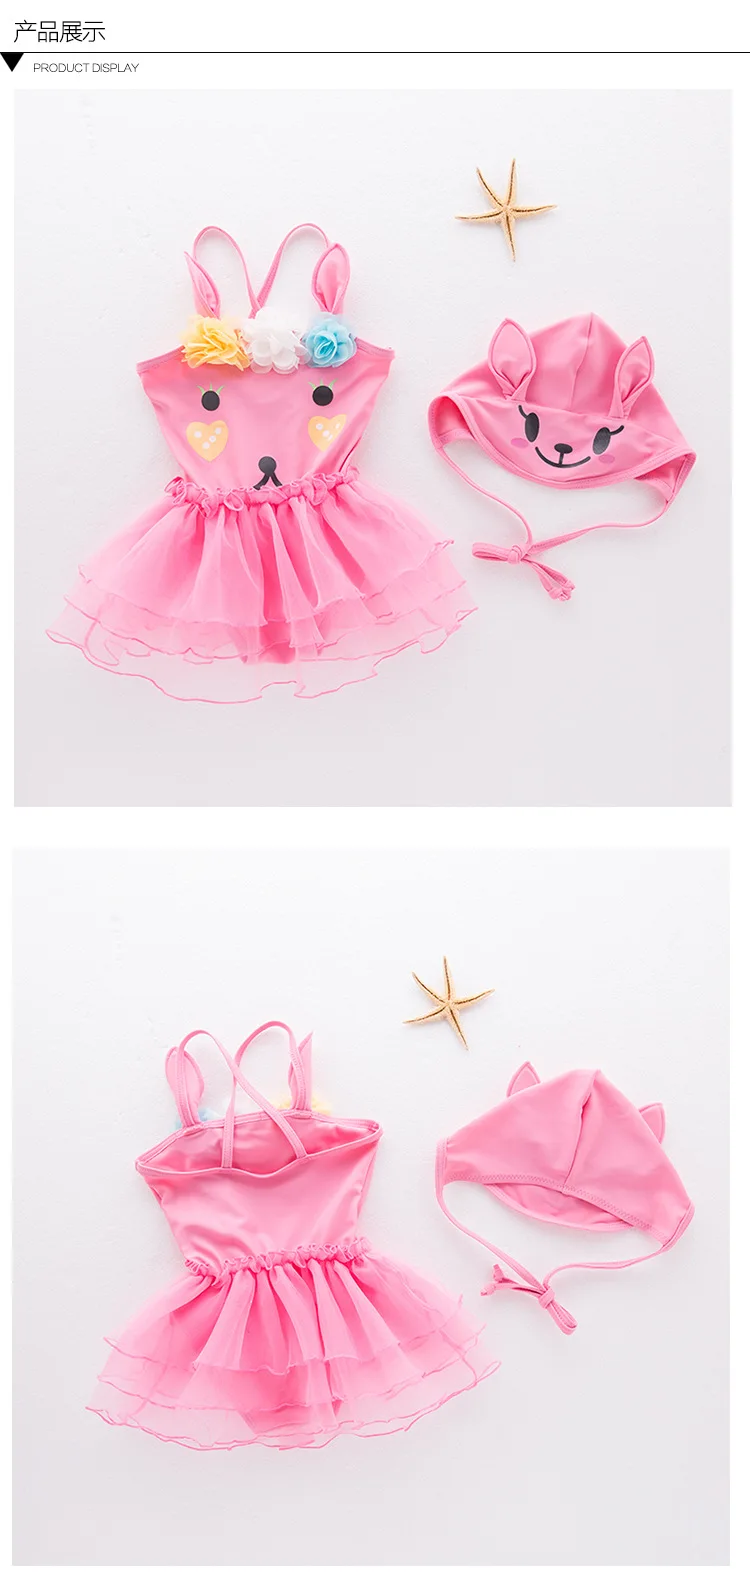 Розовый детский купальник с героями мультфильмов, купальный костюм для маленьких девочек, популярный весенний купальный костюм, детский купальник, 2 предмета, шапка+ комбинезон, для детей 0-3 лет